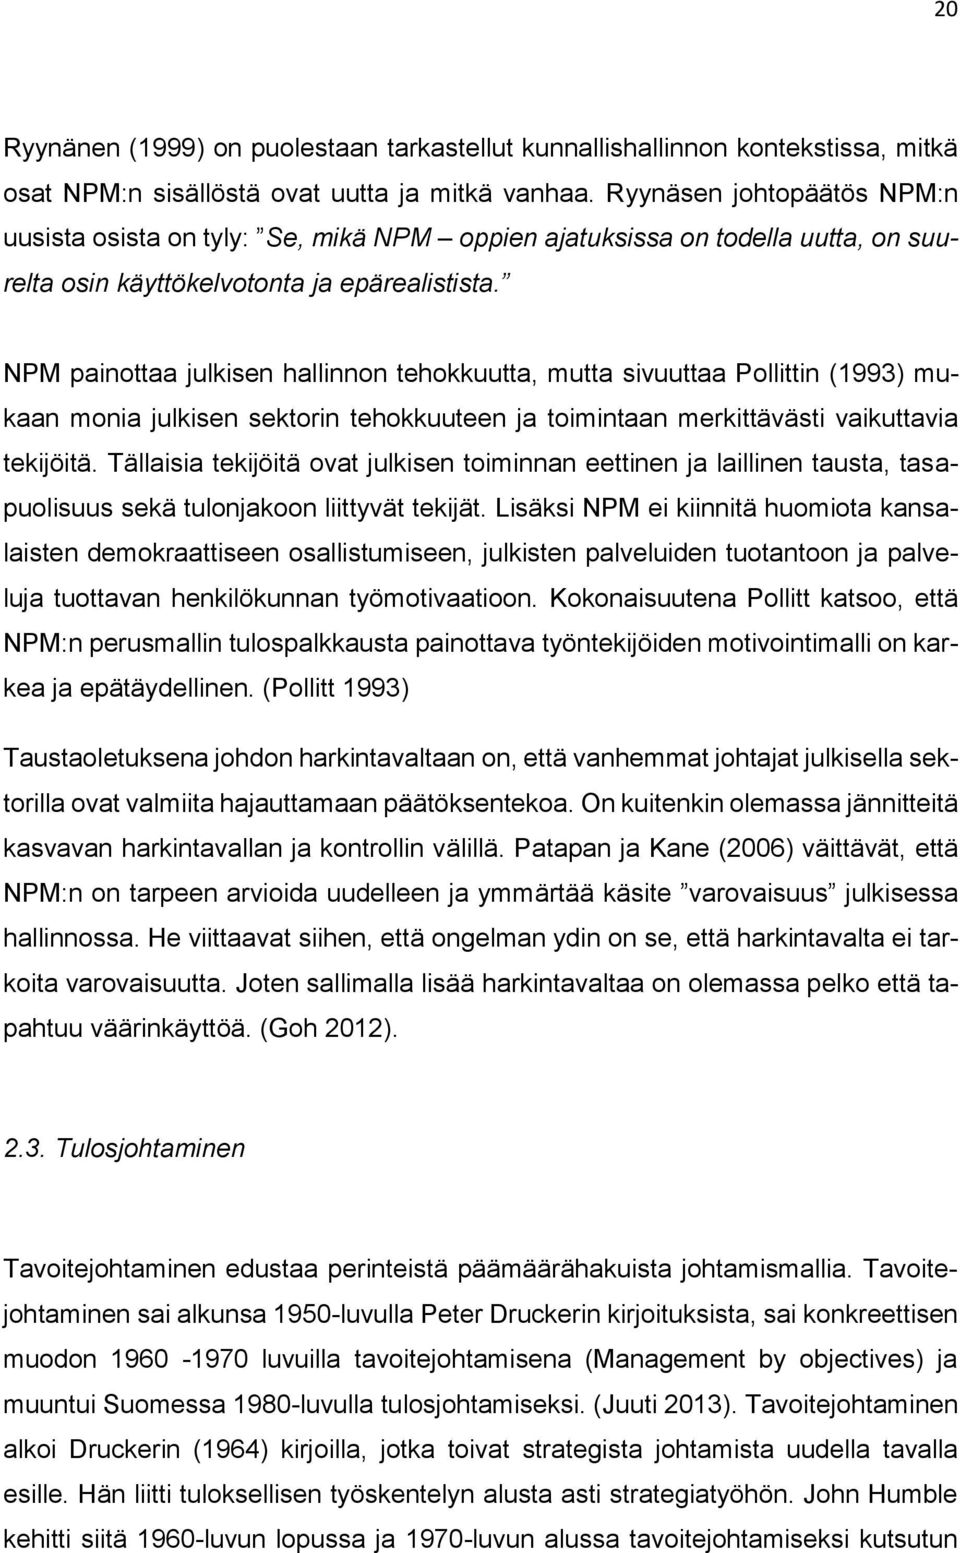 NPM painottaa julkisen hallinnon tehokkuutta, mutta sivuuttaa Pollittin (1993) mukaan monia julkisen sektorin tehokkuuteen ja toimintaan merkittävästi vaikuttavia tekijöitä.